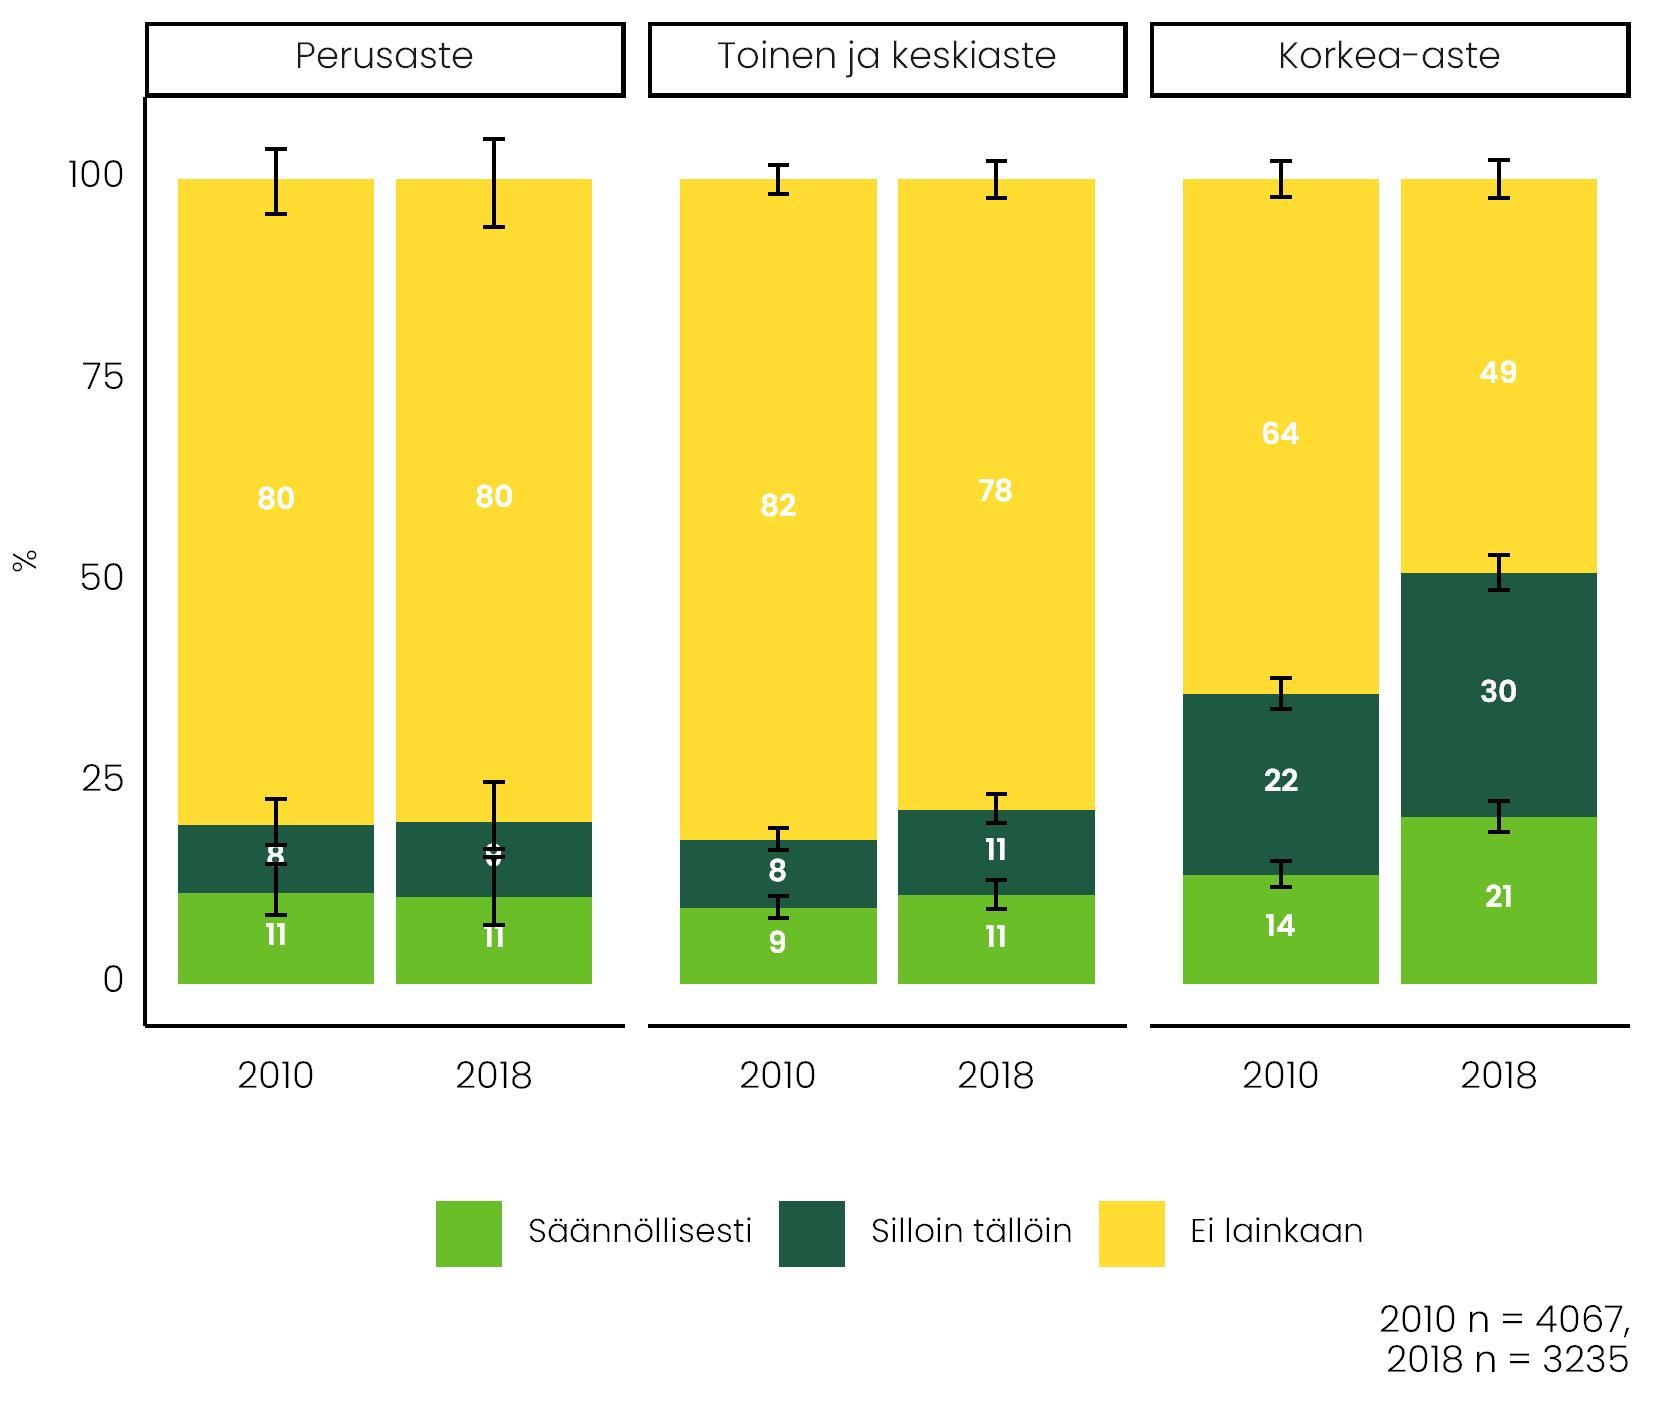 Koulutus vaikuttaa etätöiden yleisyyteen. Kuviossa vertaillaan vuosia 2010 ja 2018 ja kolmea koulutustasoa (perus-, toinen- ja korkea-aste).